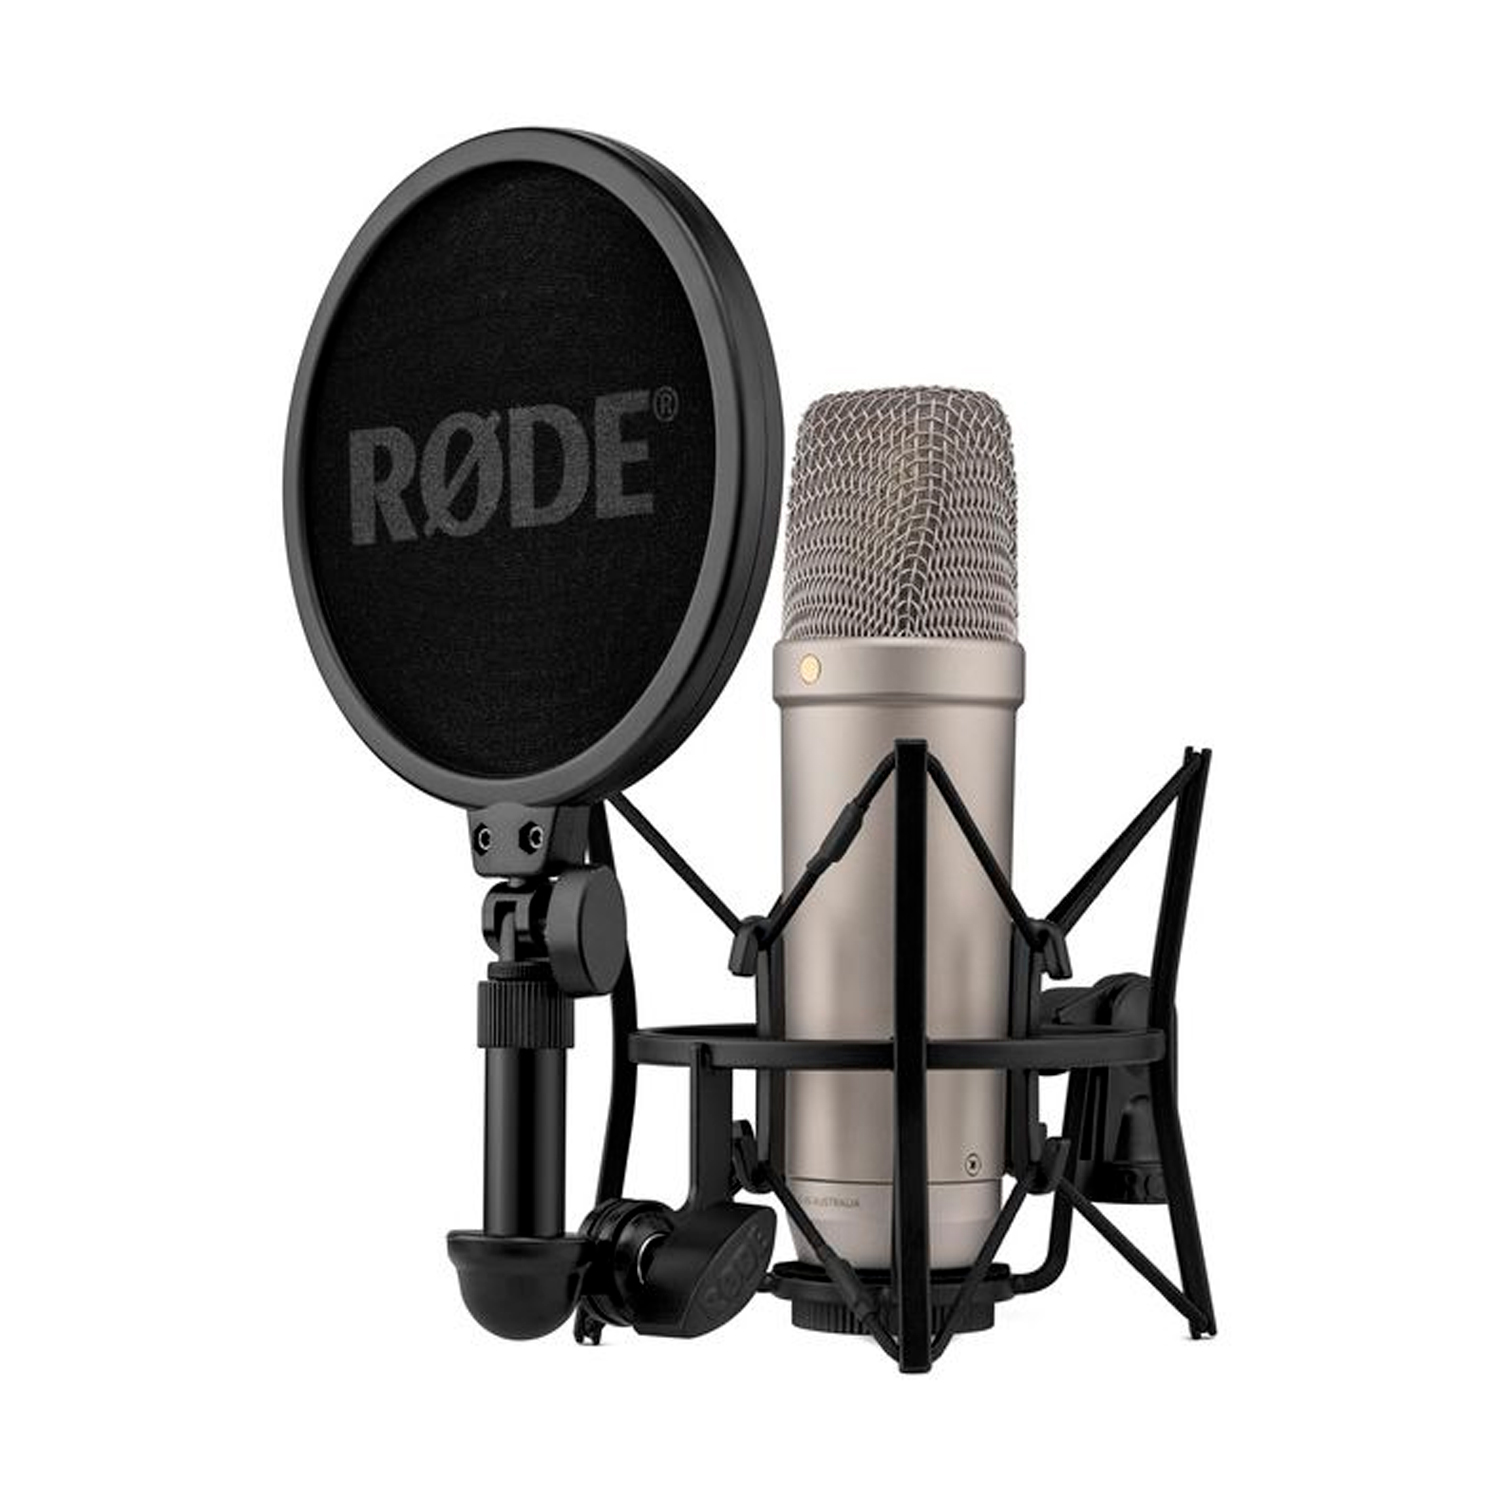 RODE NT1 5th Generation Silver - Студийный конденсаторный микрофон, серебристый